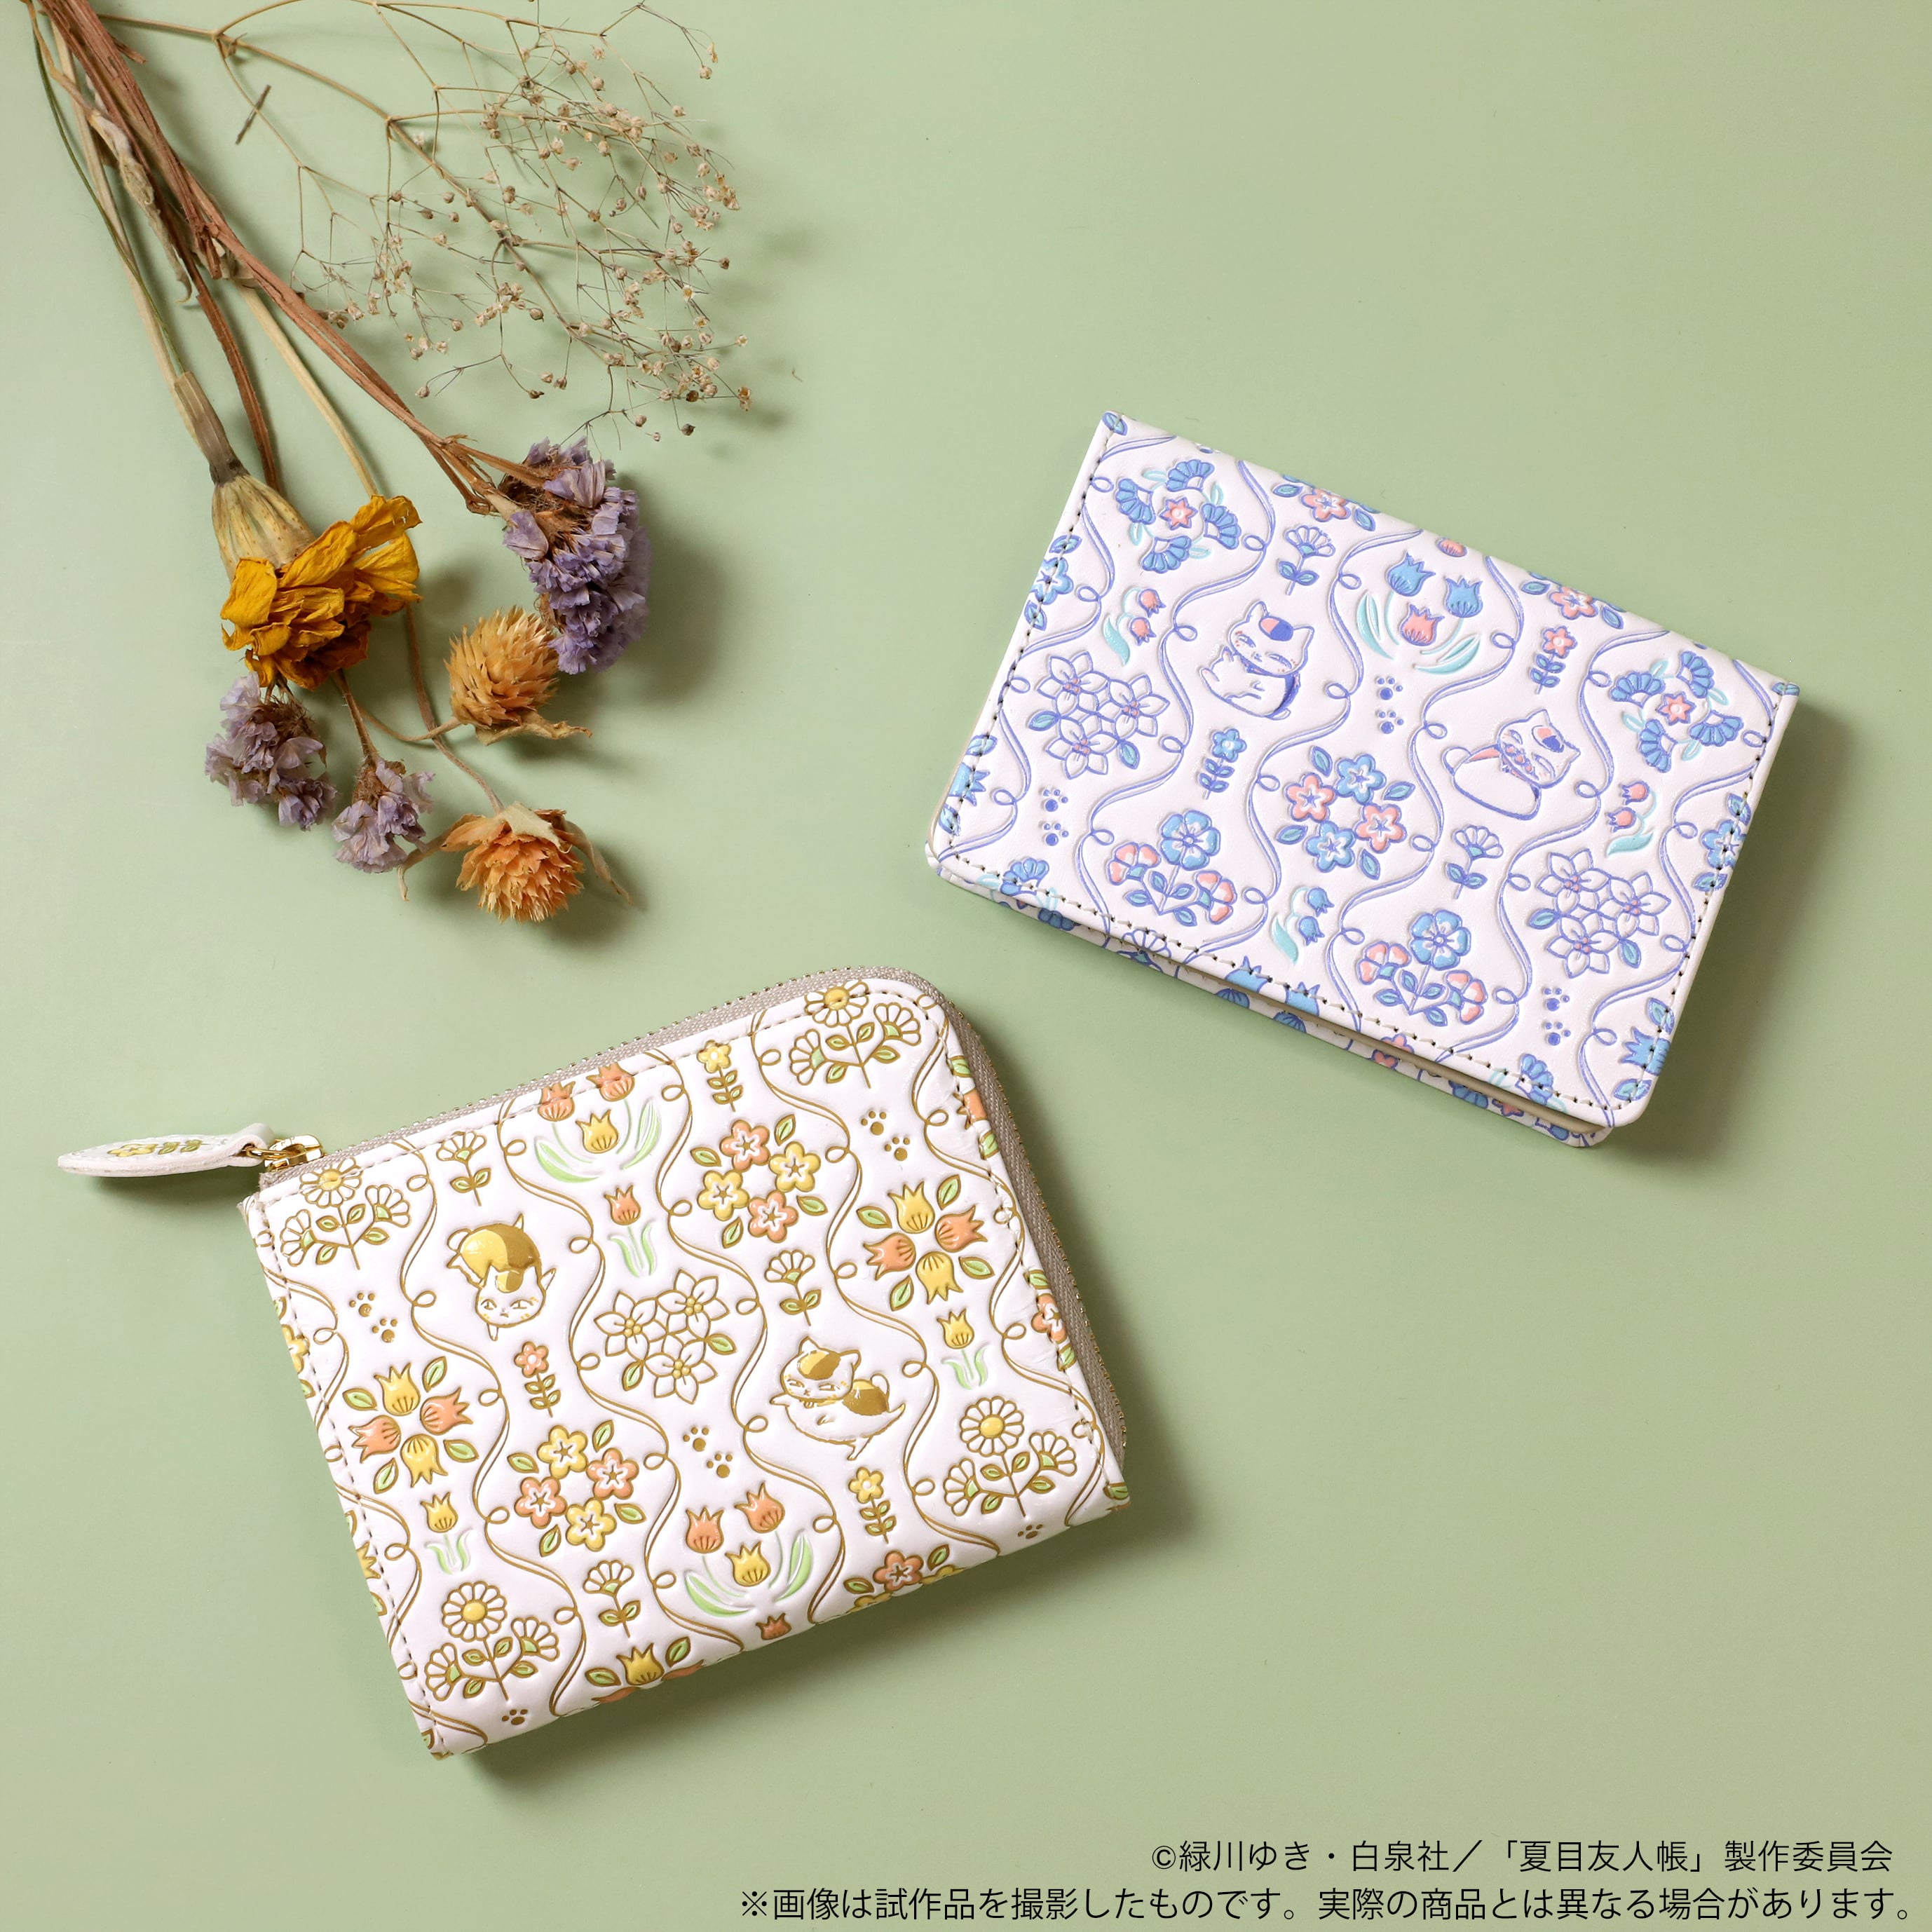 ニャンコ先生 デザインの浅草文庫®L字ミニ財布とカードケースが受注 